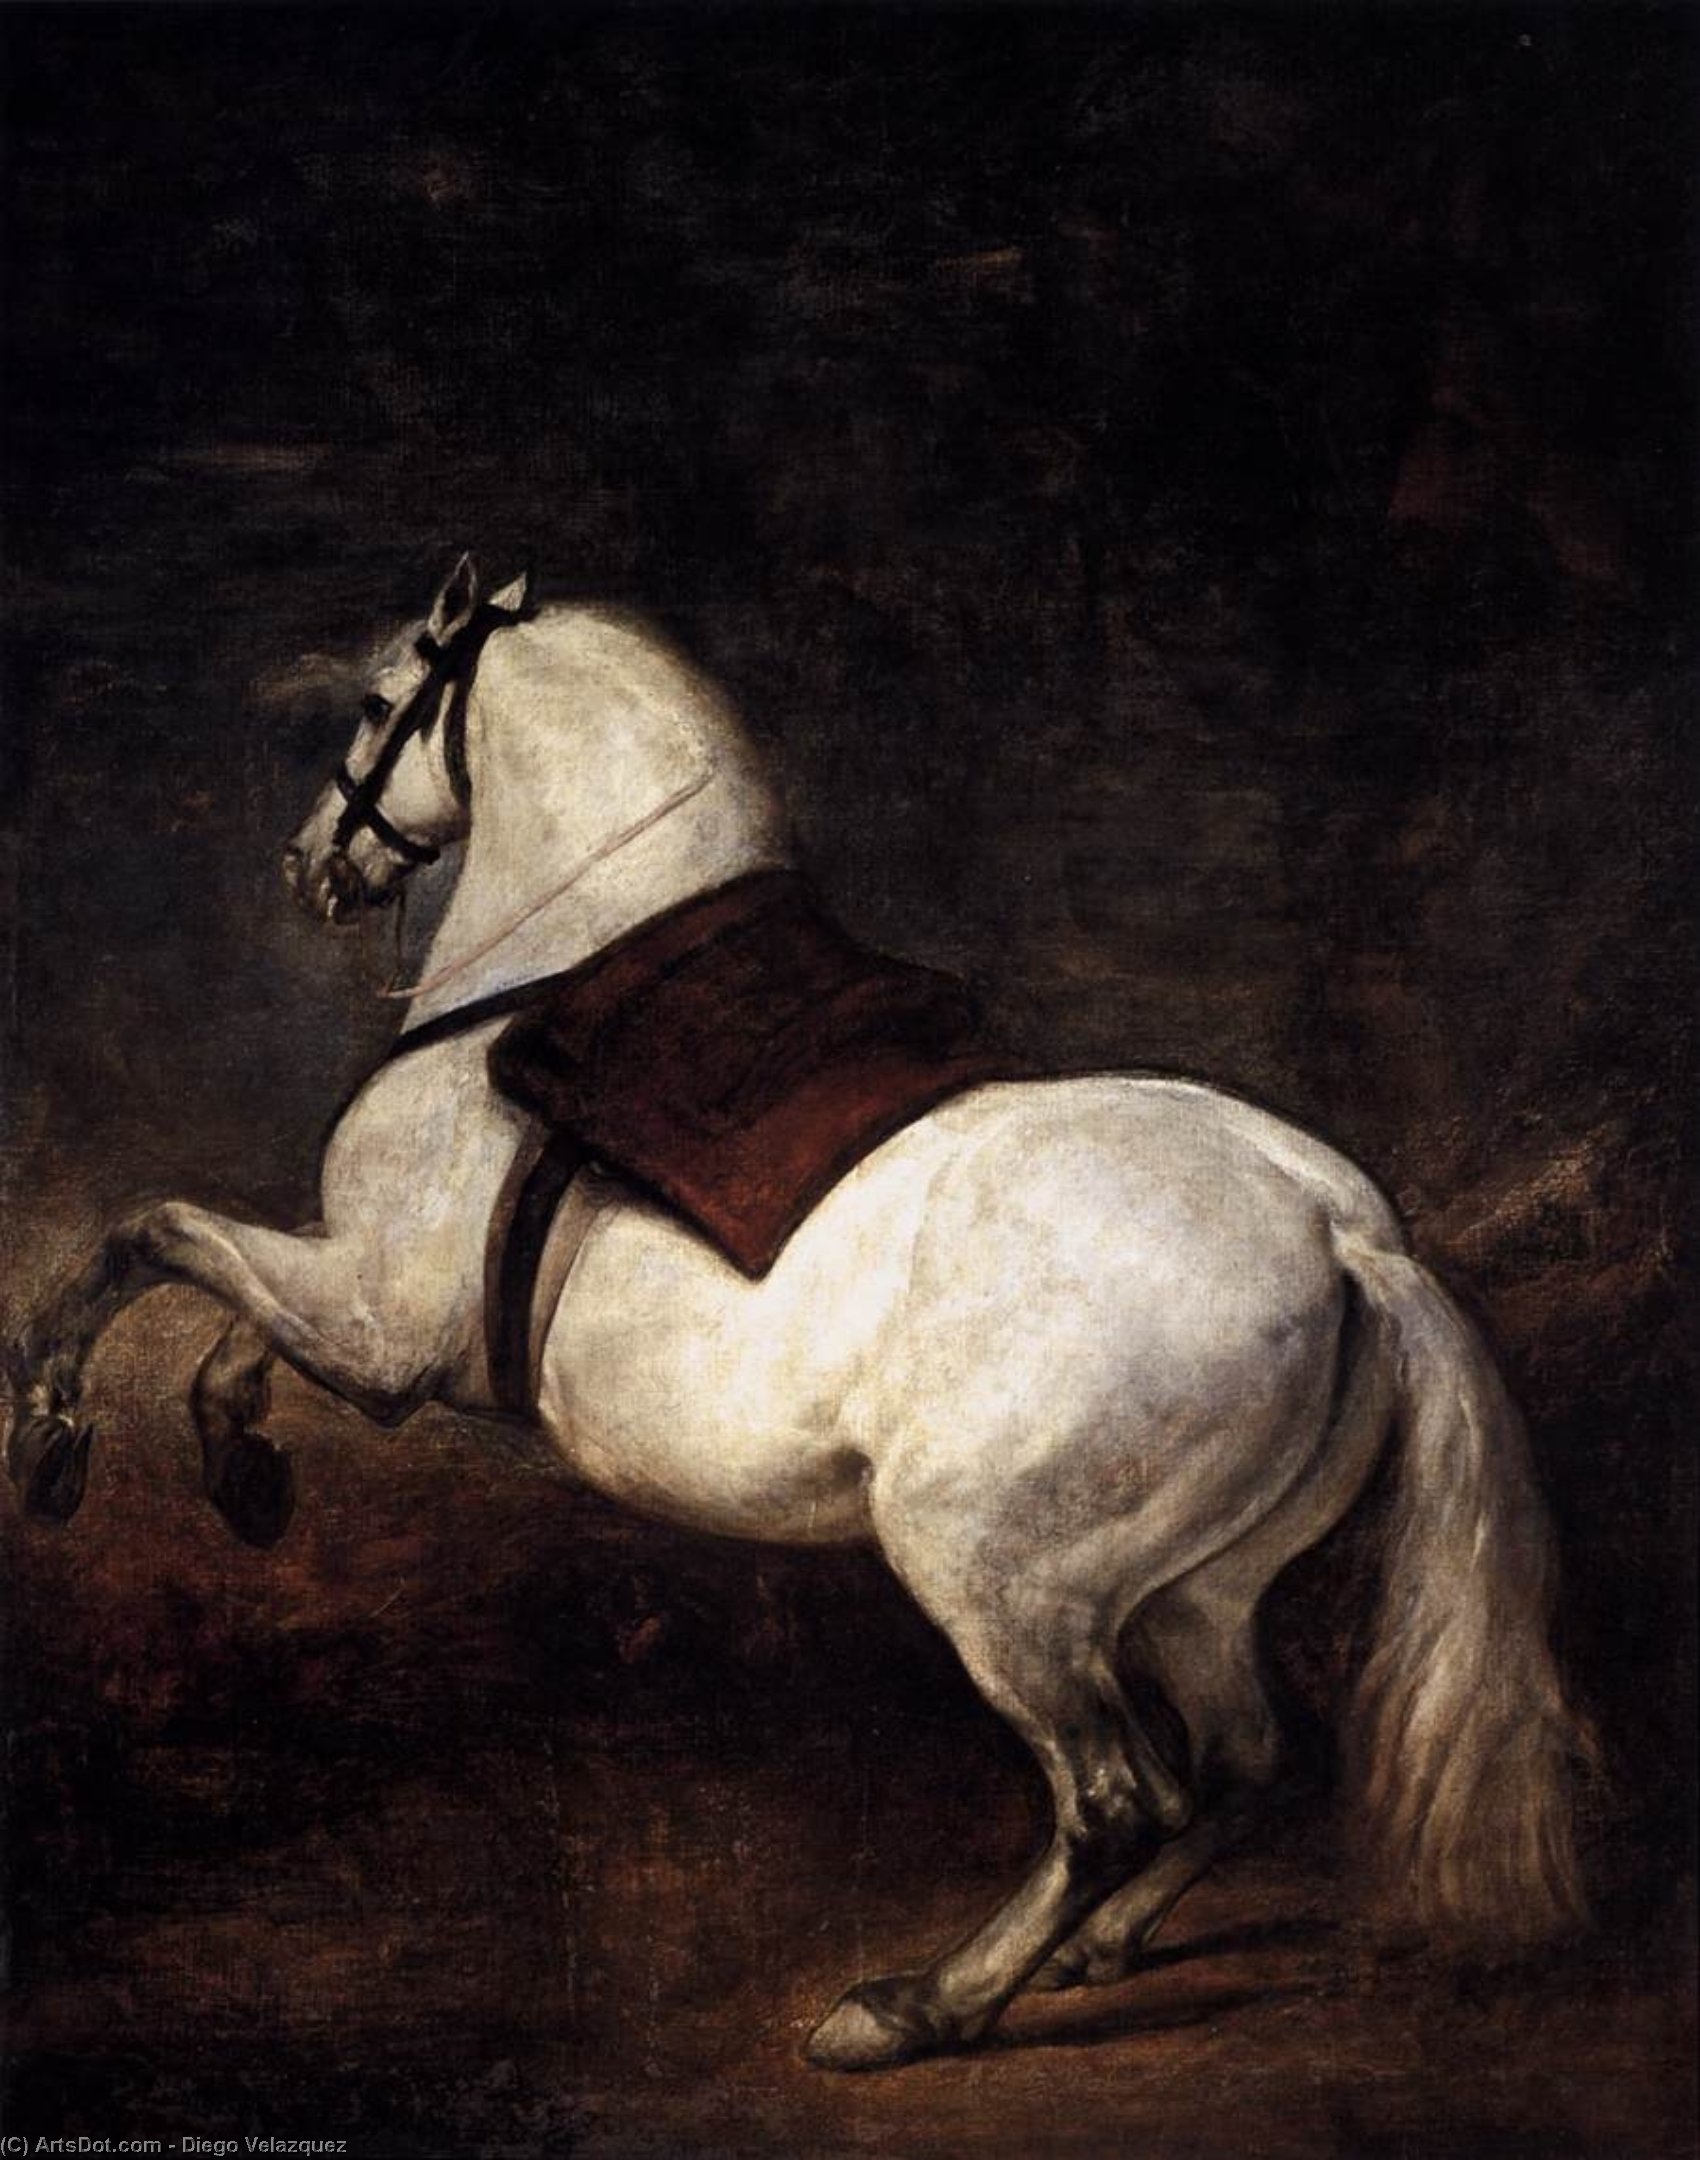 WikiOO.org - Enciclopédia das Belas Artes - Pintura, Arte por Diego Velazquez - A White Horse